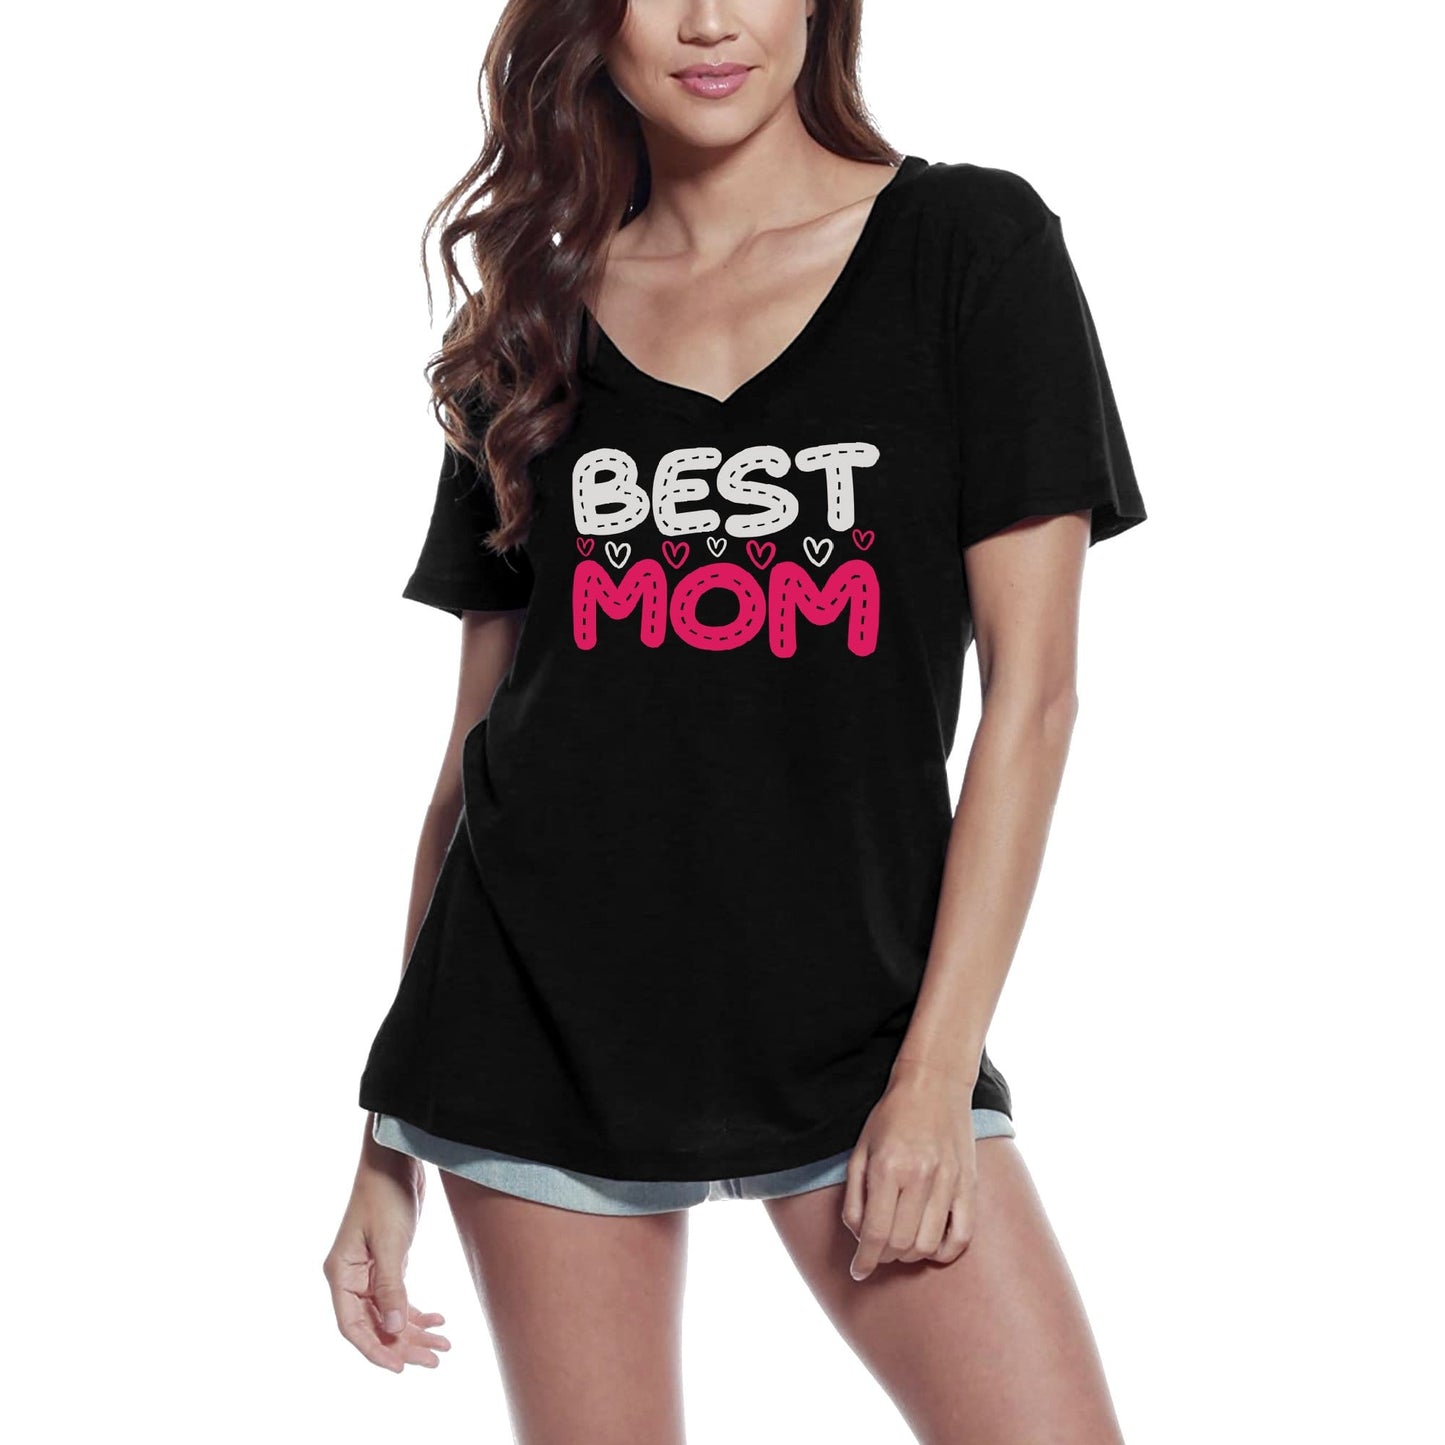 ULTRABASIC Women's T-Shirt Best Mom - Mother Short Sleeve Tee Shirt Tops